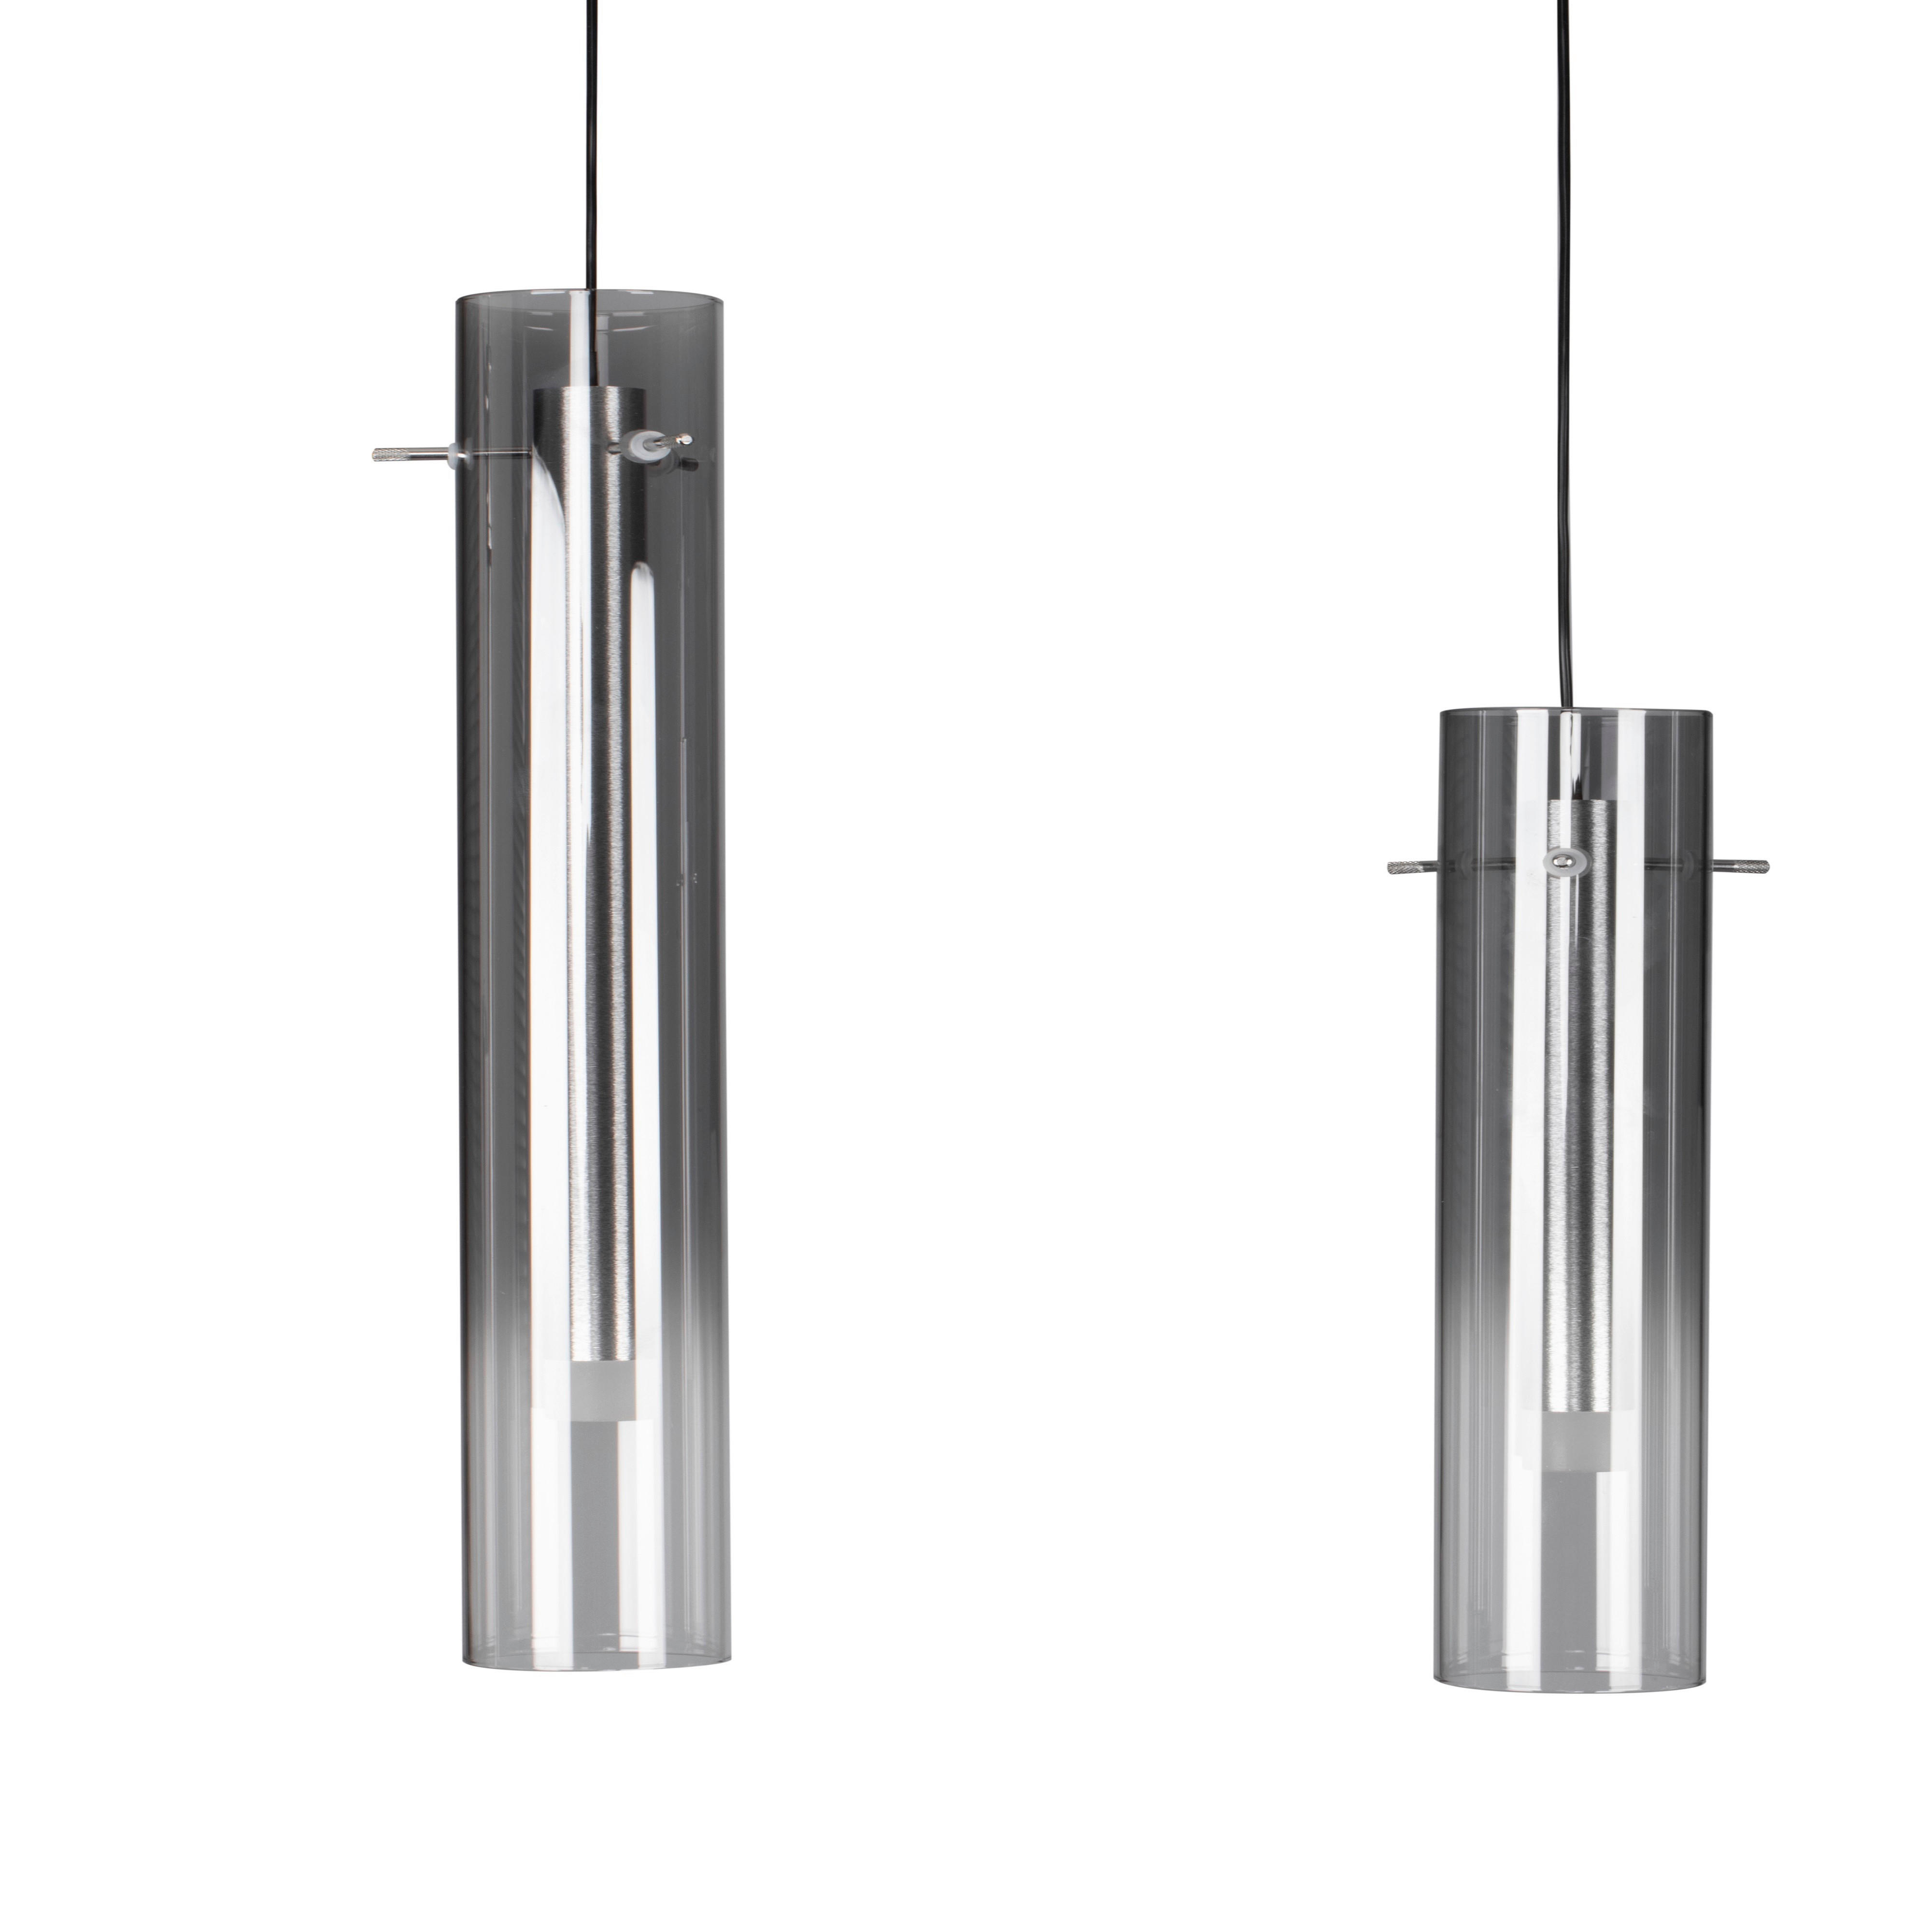 LED-HÄNGELEUCHTE 92/8,5/150 cm   - Schwarz, Design, Glas/Metall (92/8,5/150cm) - Ambiente